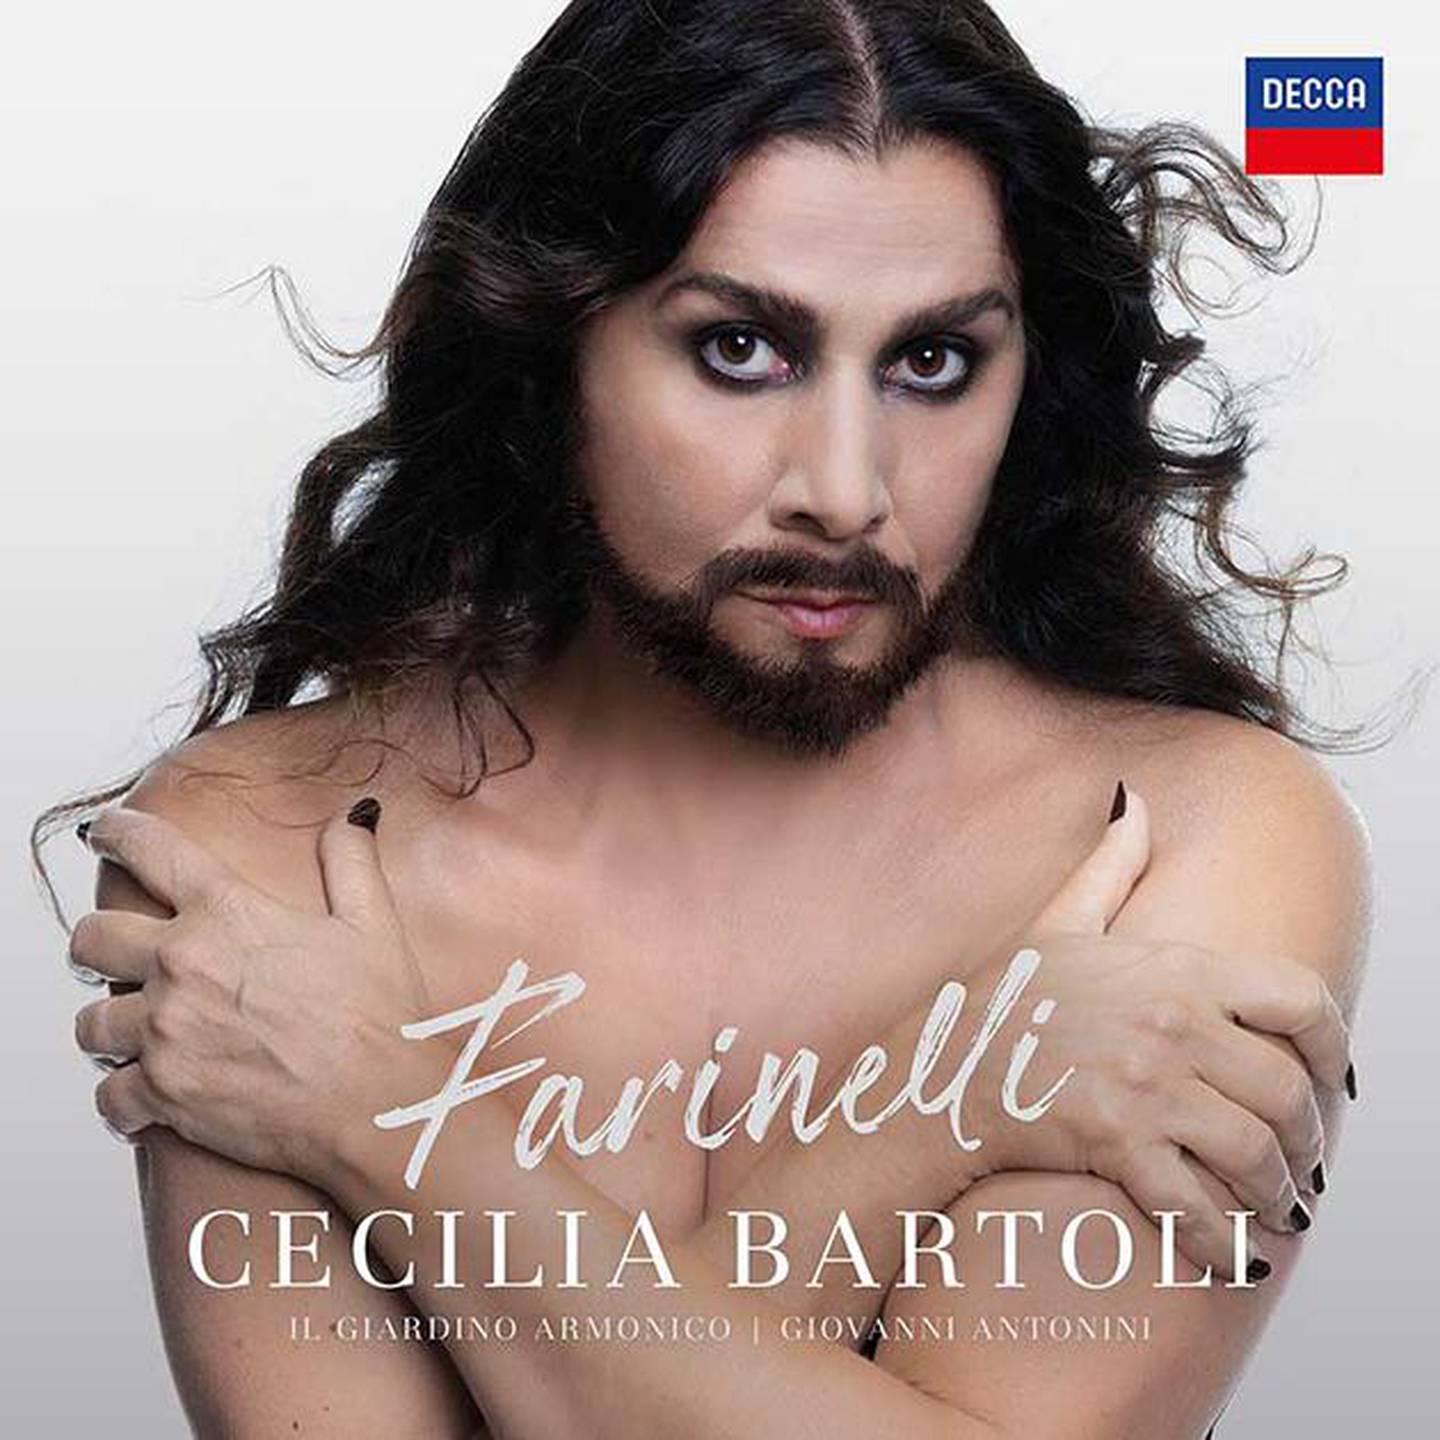 Kastratene som tema er ikke helt nytt for Cecilia Bartoli. Samme type repertoar presenteres allerede i albumet  fra 2009. I går Bartoli dypere inn i tematikken ved også å utforske klangen av stemmen i grenseland mellom kjønnene, ved en gjennomgående mørkere klangvalør.